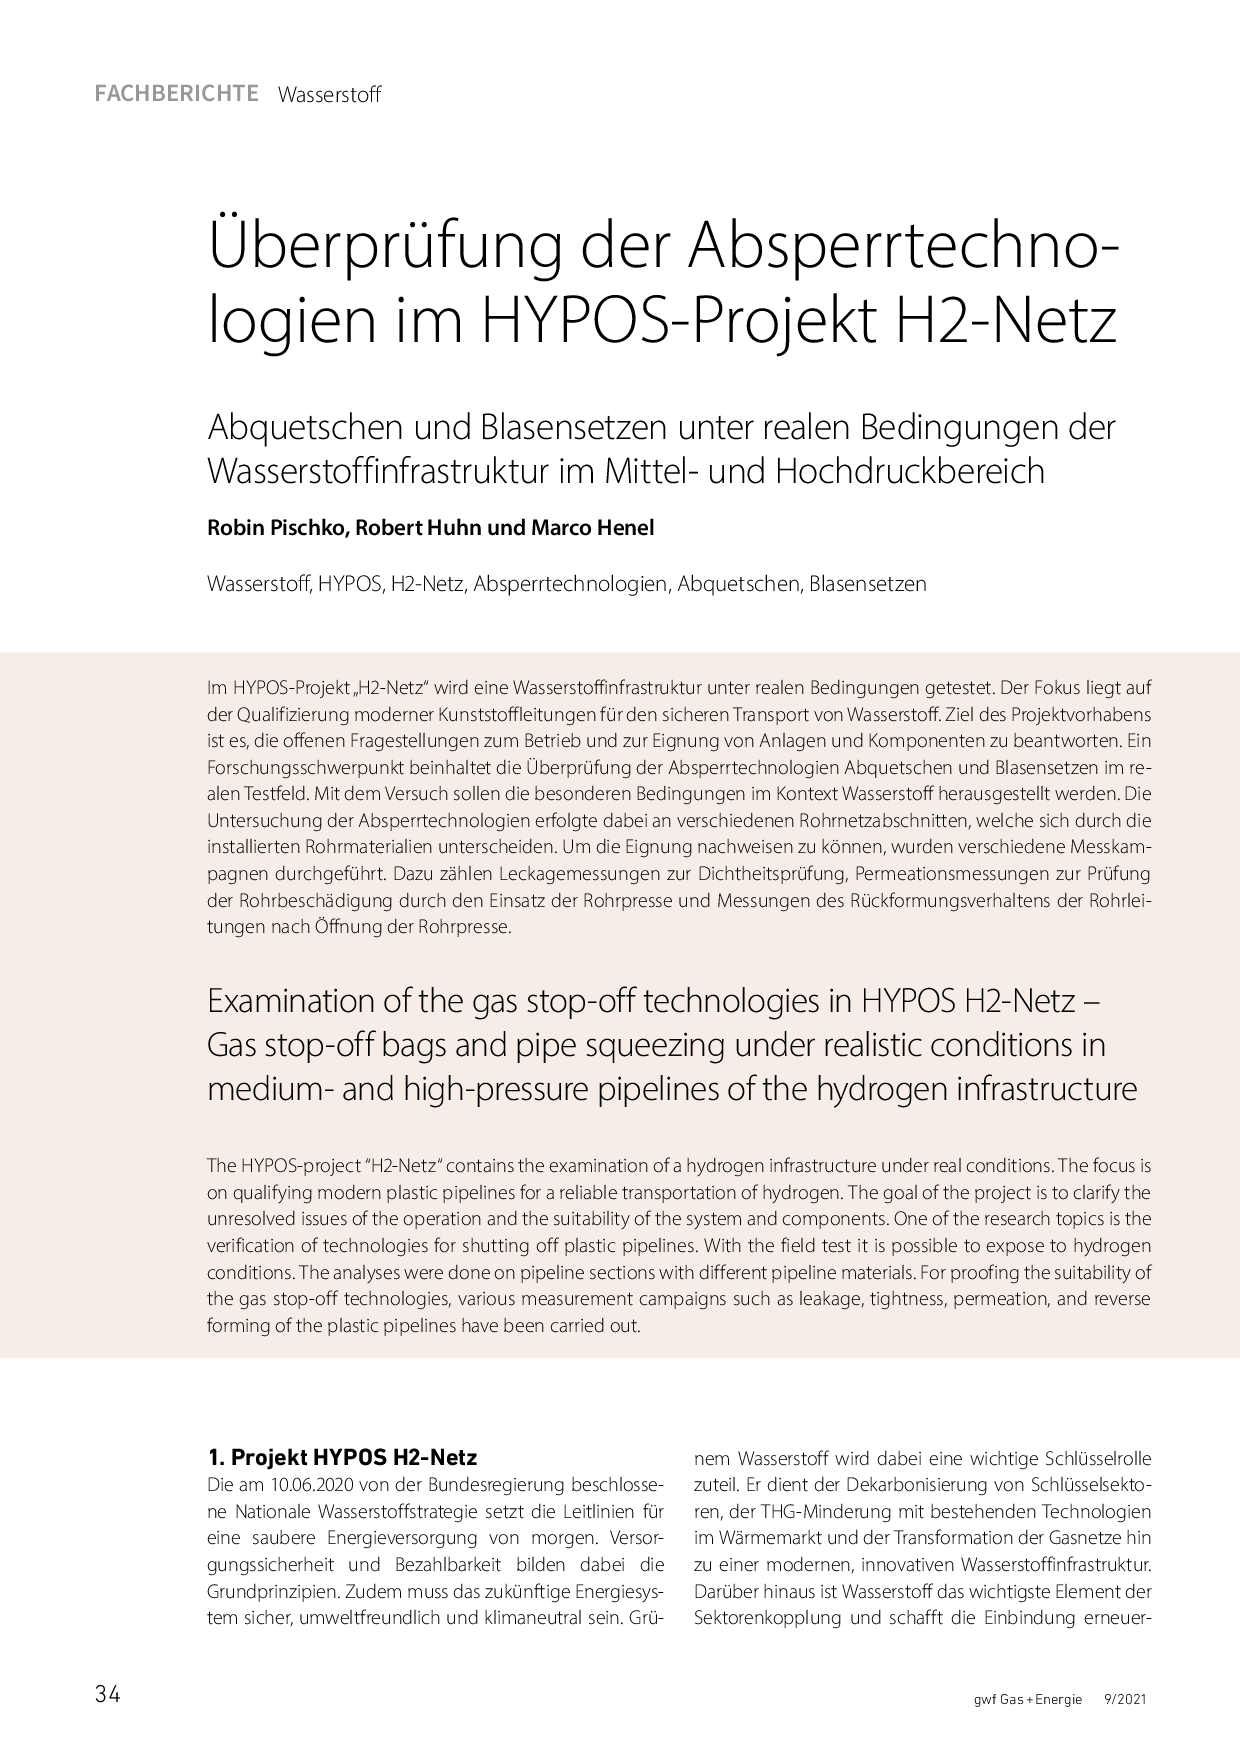 Überprüfung der Absperrtechnologien im HYPOS-Projekt H2-Netz